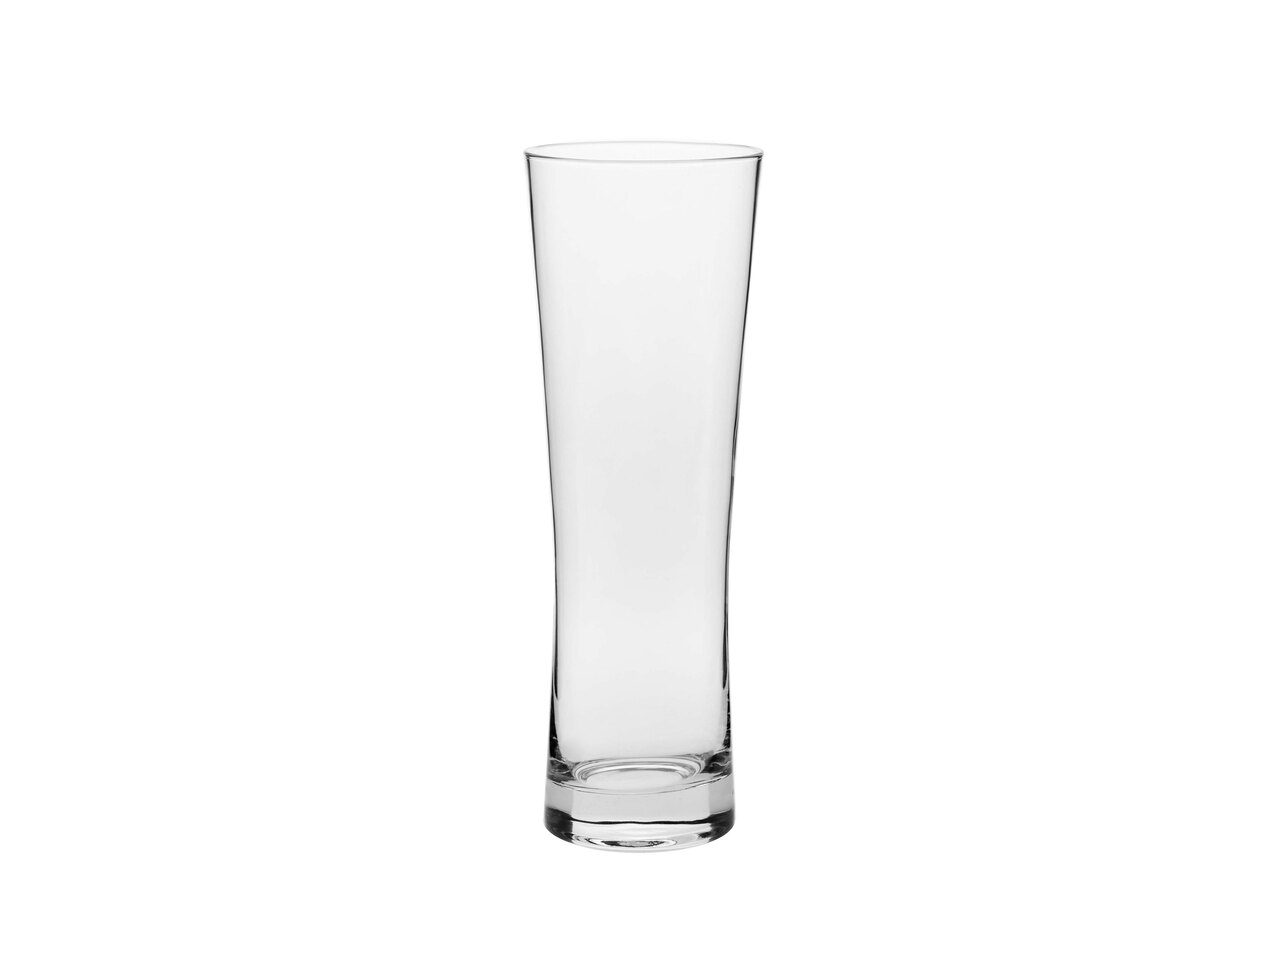 Zestaw do piwa , cena 54,9 PLN 
Zestaw do piwa 
- 6 szt.:
2 szklanki 500 ml,
2 ...